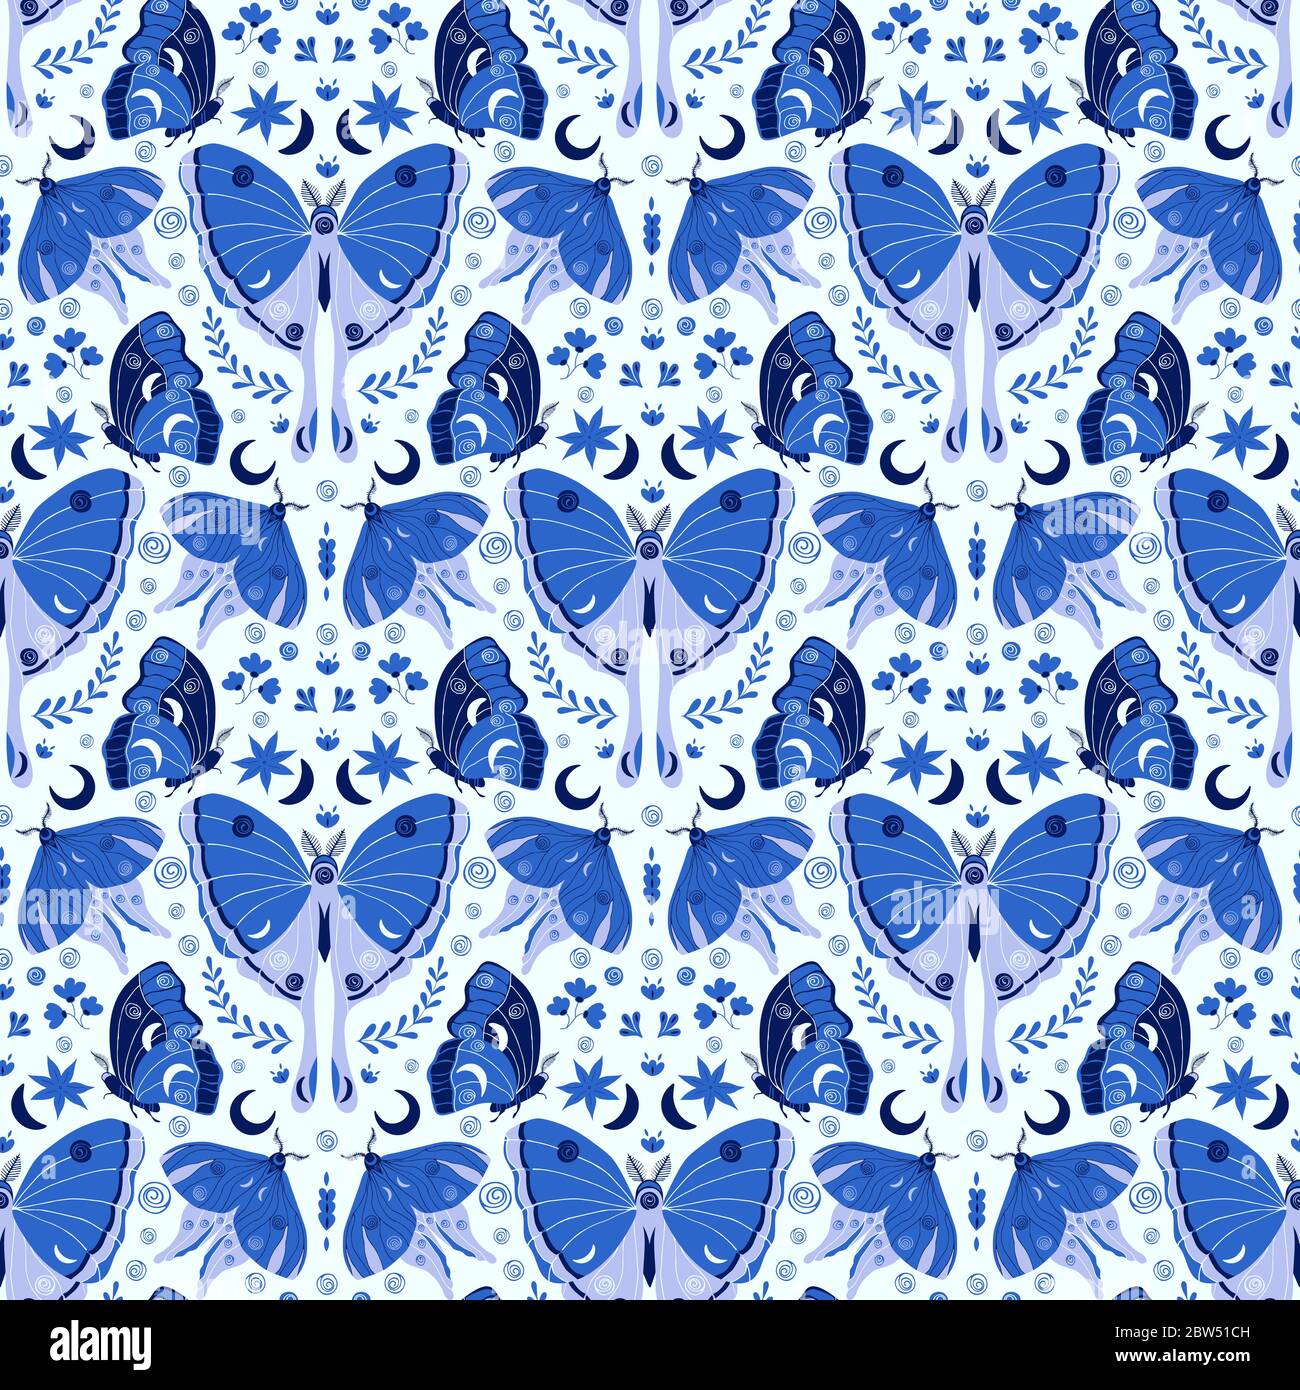 Hand gezeichnet Motten / Schmetterlinge Muster in einer Muschel reflektiert Wiederholung in Blautönen gefärbt. Elegantes nahtloses Vektormuster im Vintage-Stil. Stock Vektor